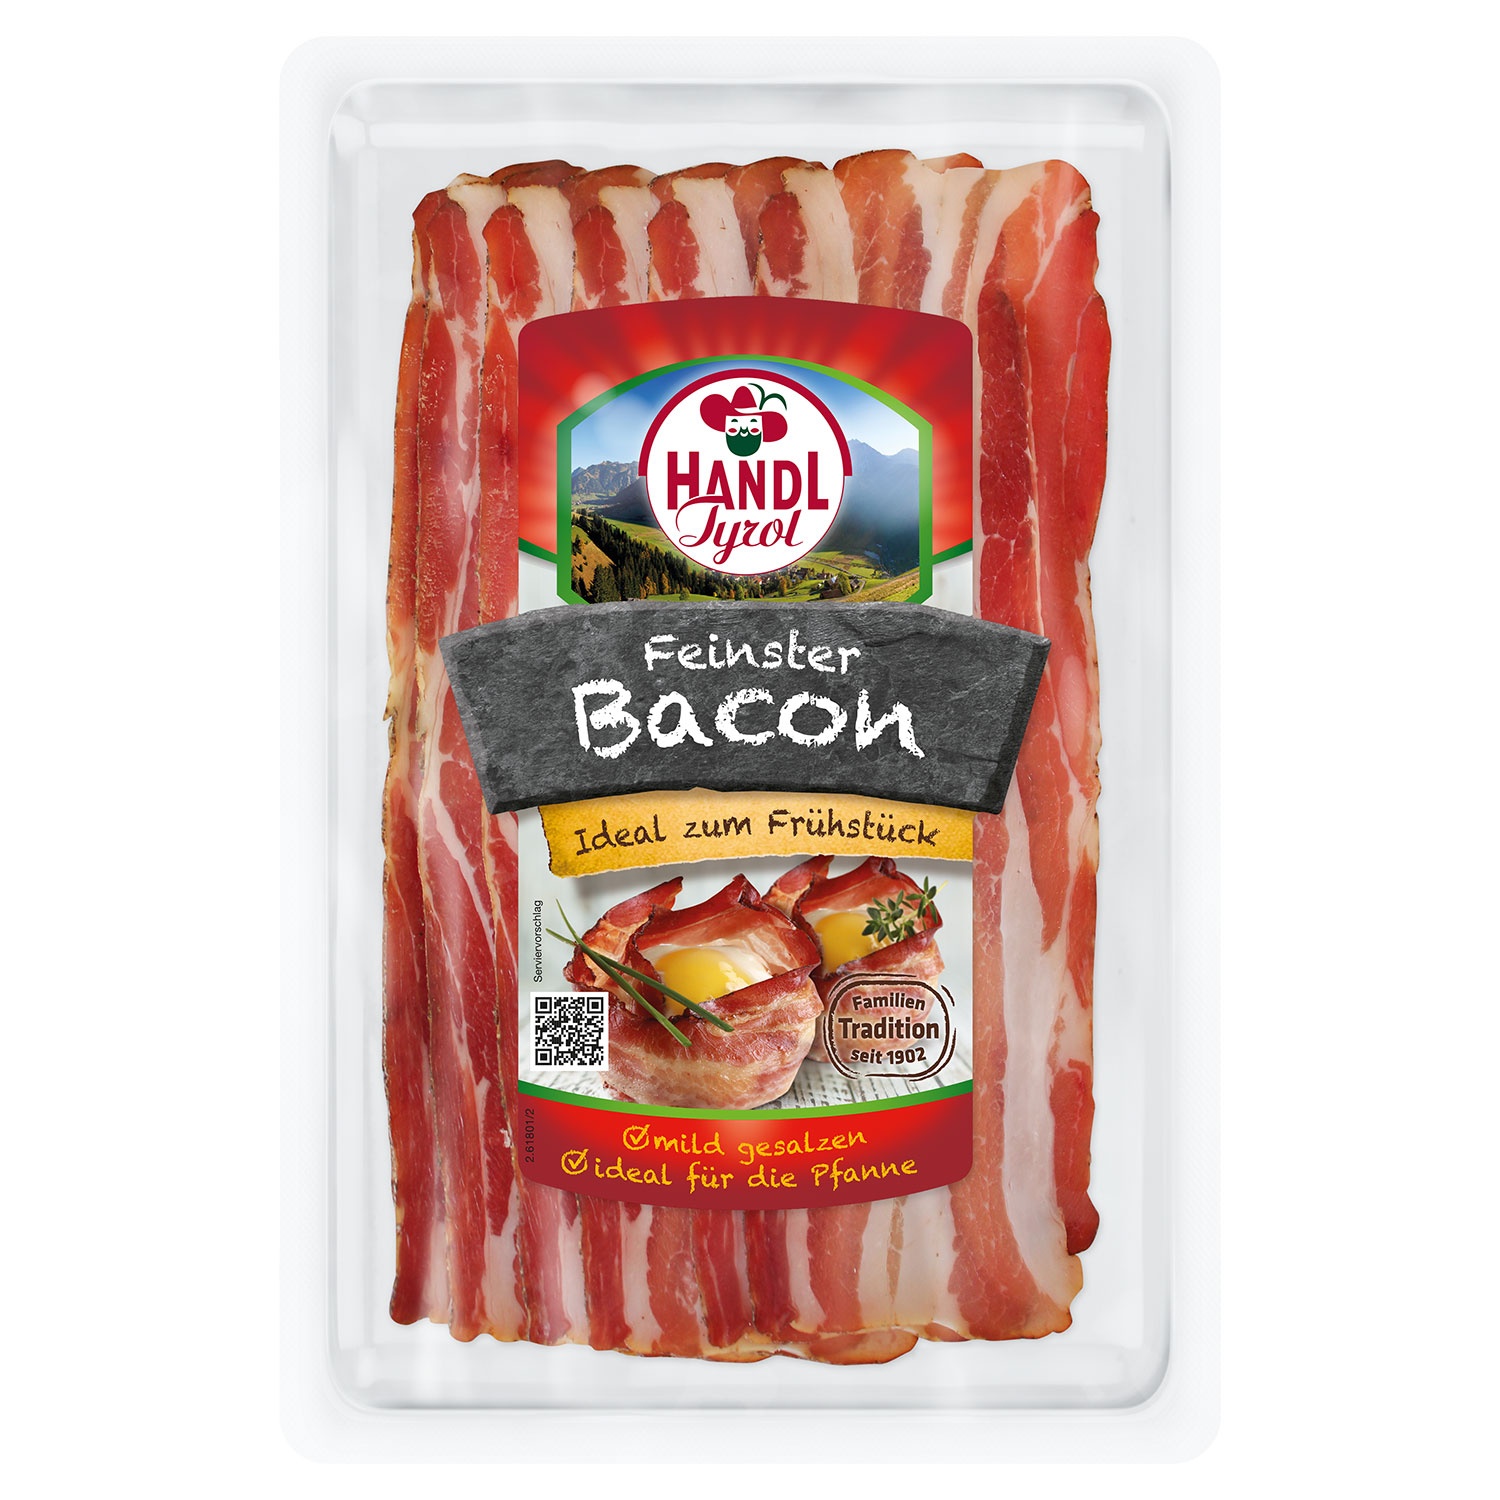 HANDL Feinster Bacon 100 g